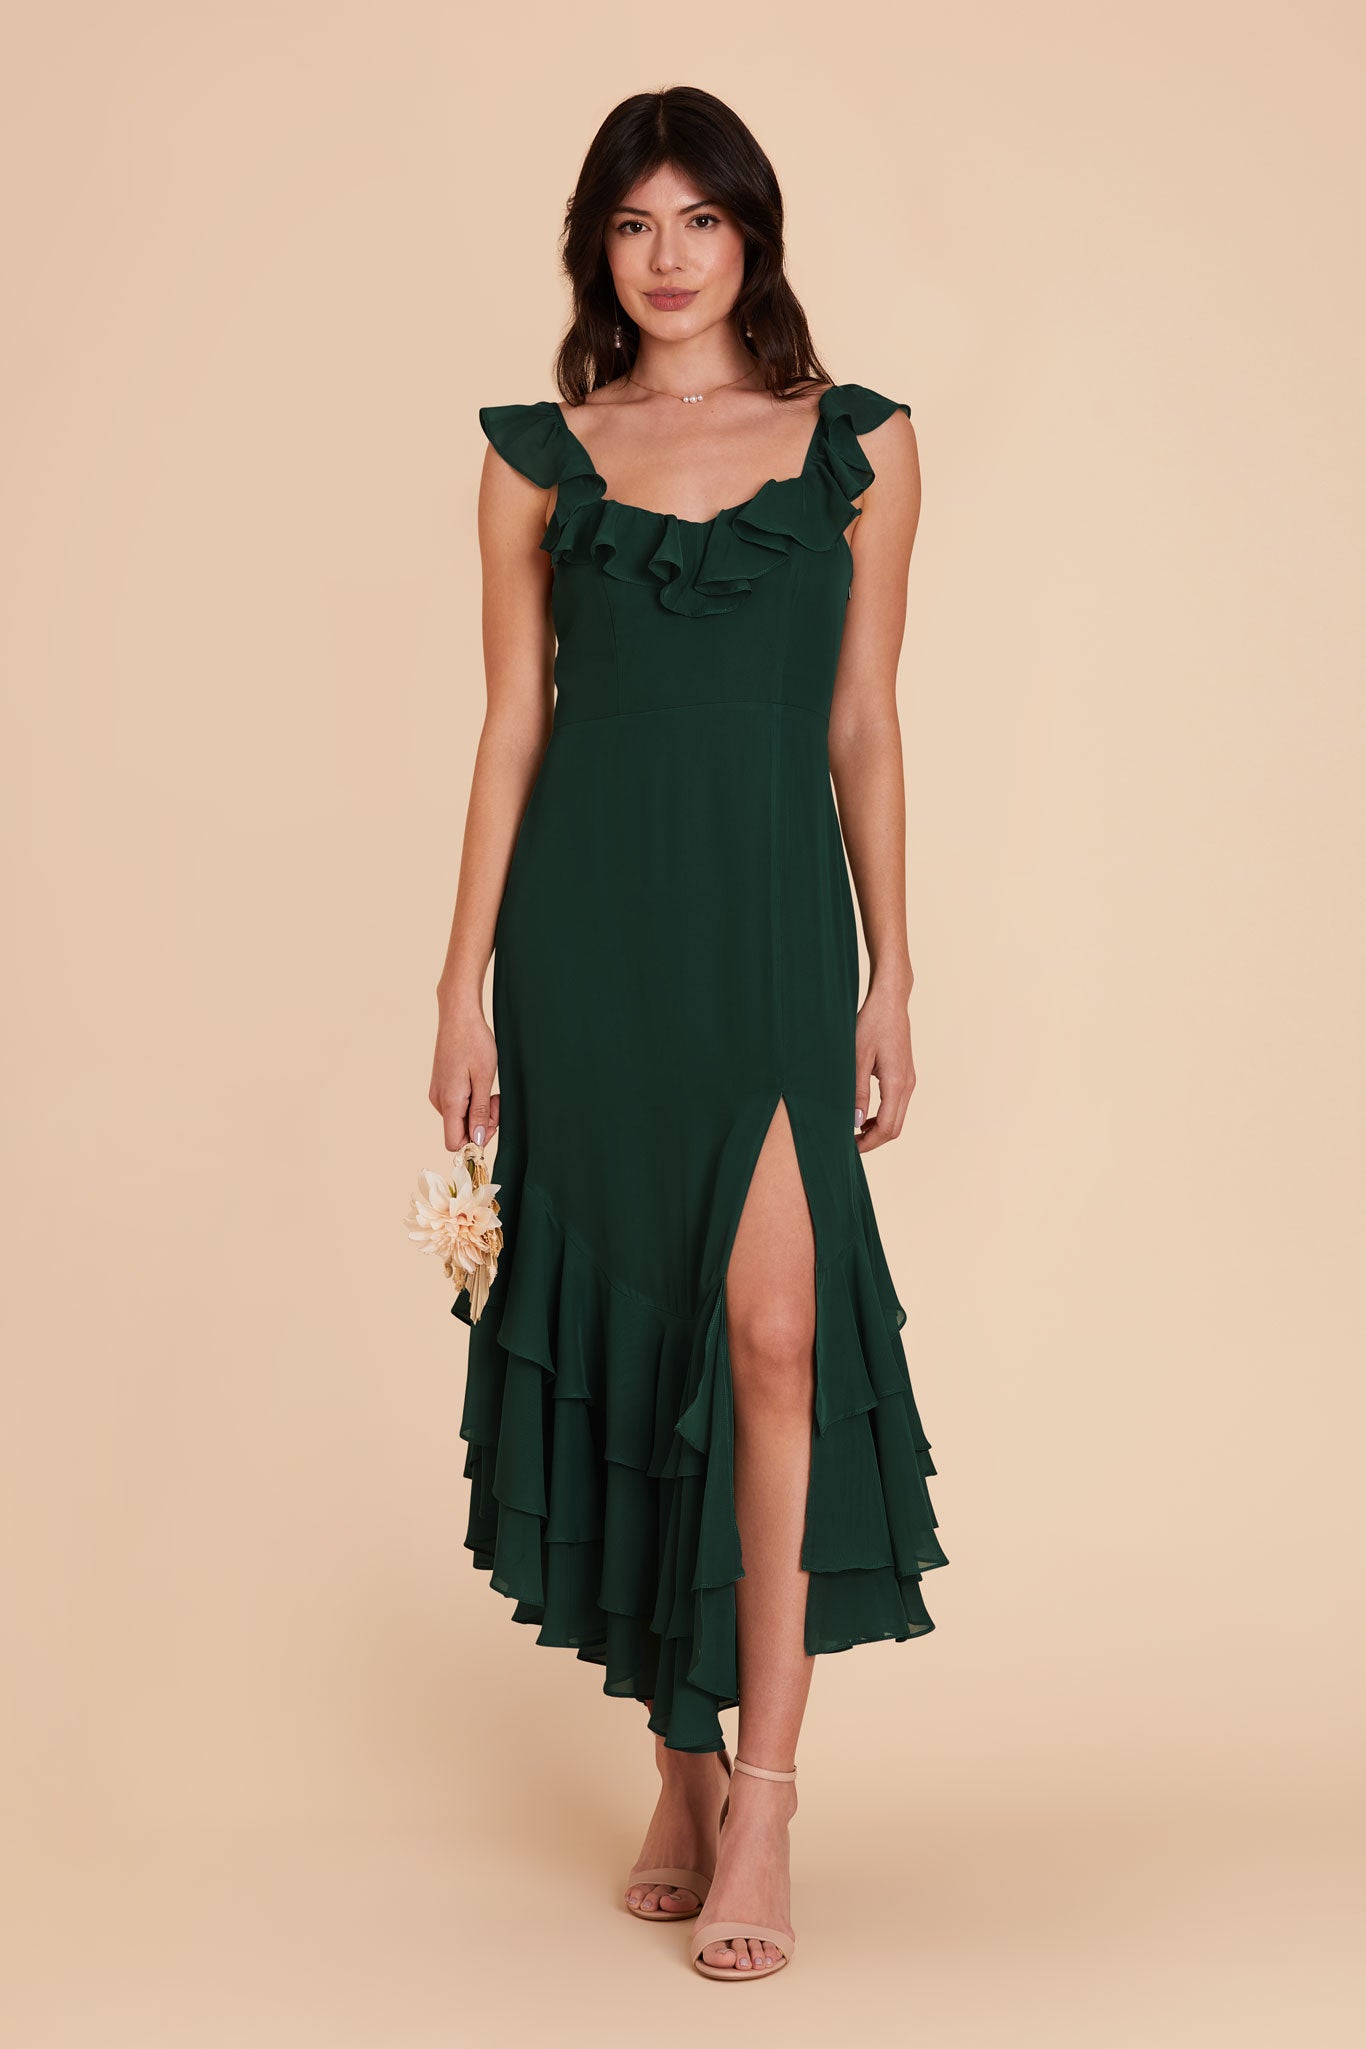 Emerald Ginny Chiffon Dress by Birdy Grey